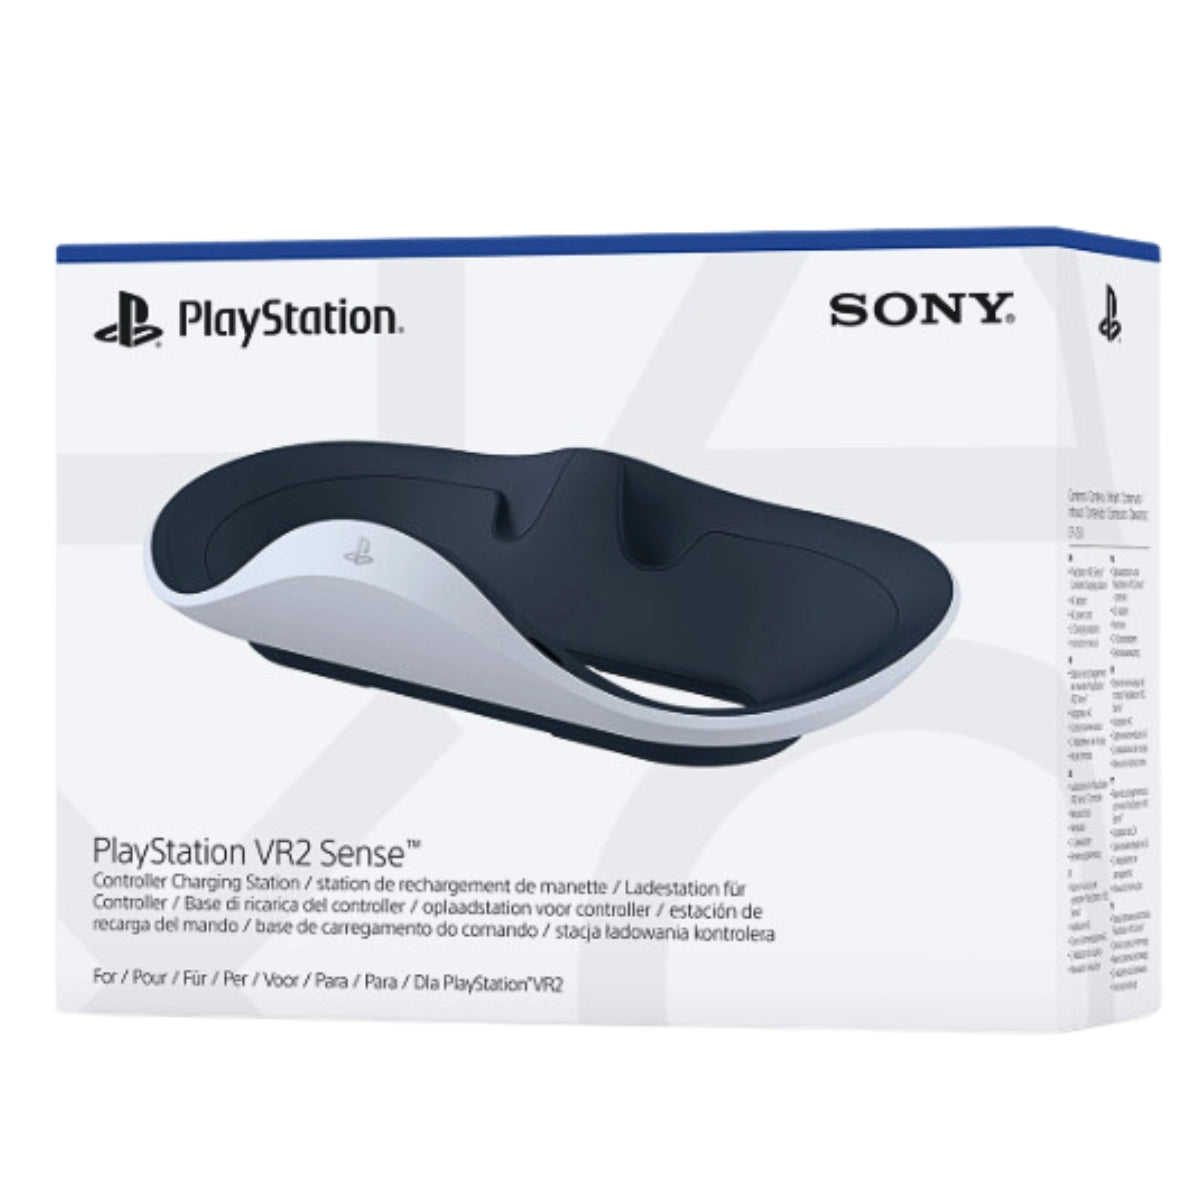 מטען זוגי לבקרים עבור VR2 Sense לבן PlayStation